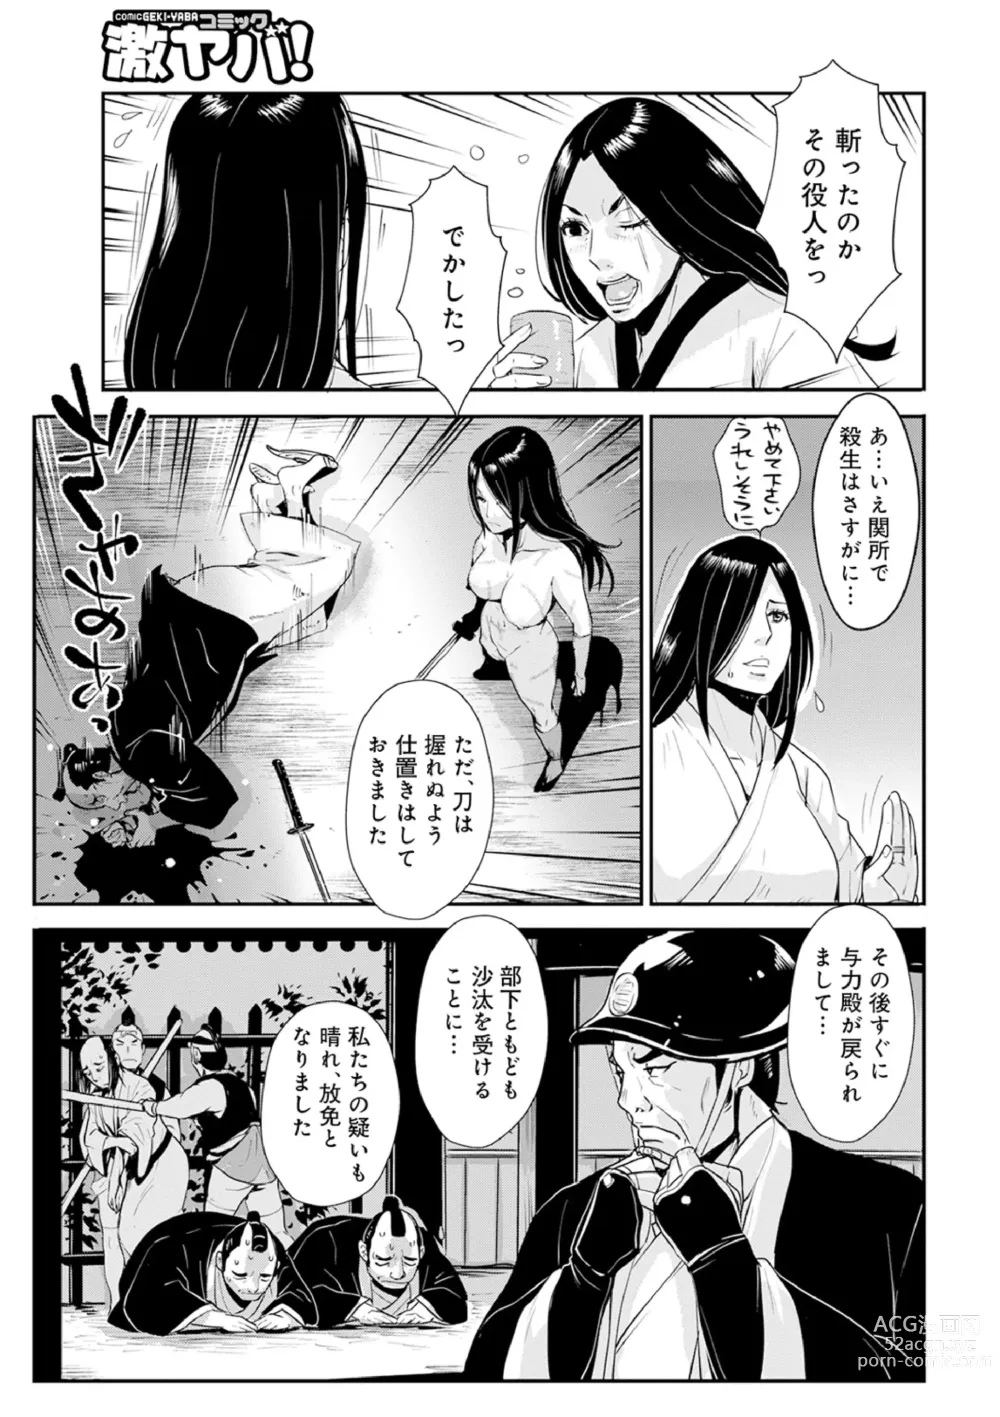 Page 7 of manga Harami samurai 12 ~Sekigan no Tosho no Nuresoboru Futanari no Kanjuku Dankon Nyotai~